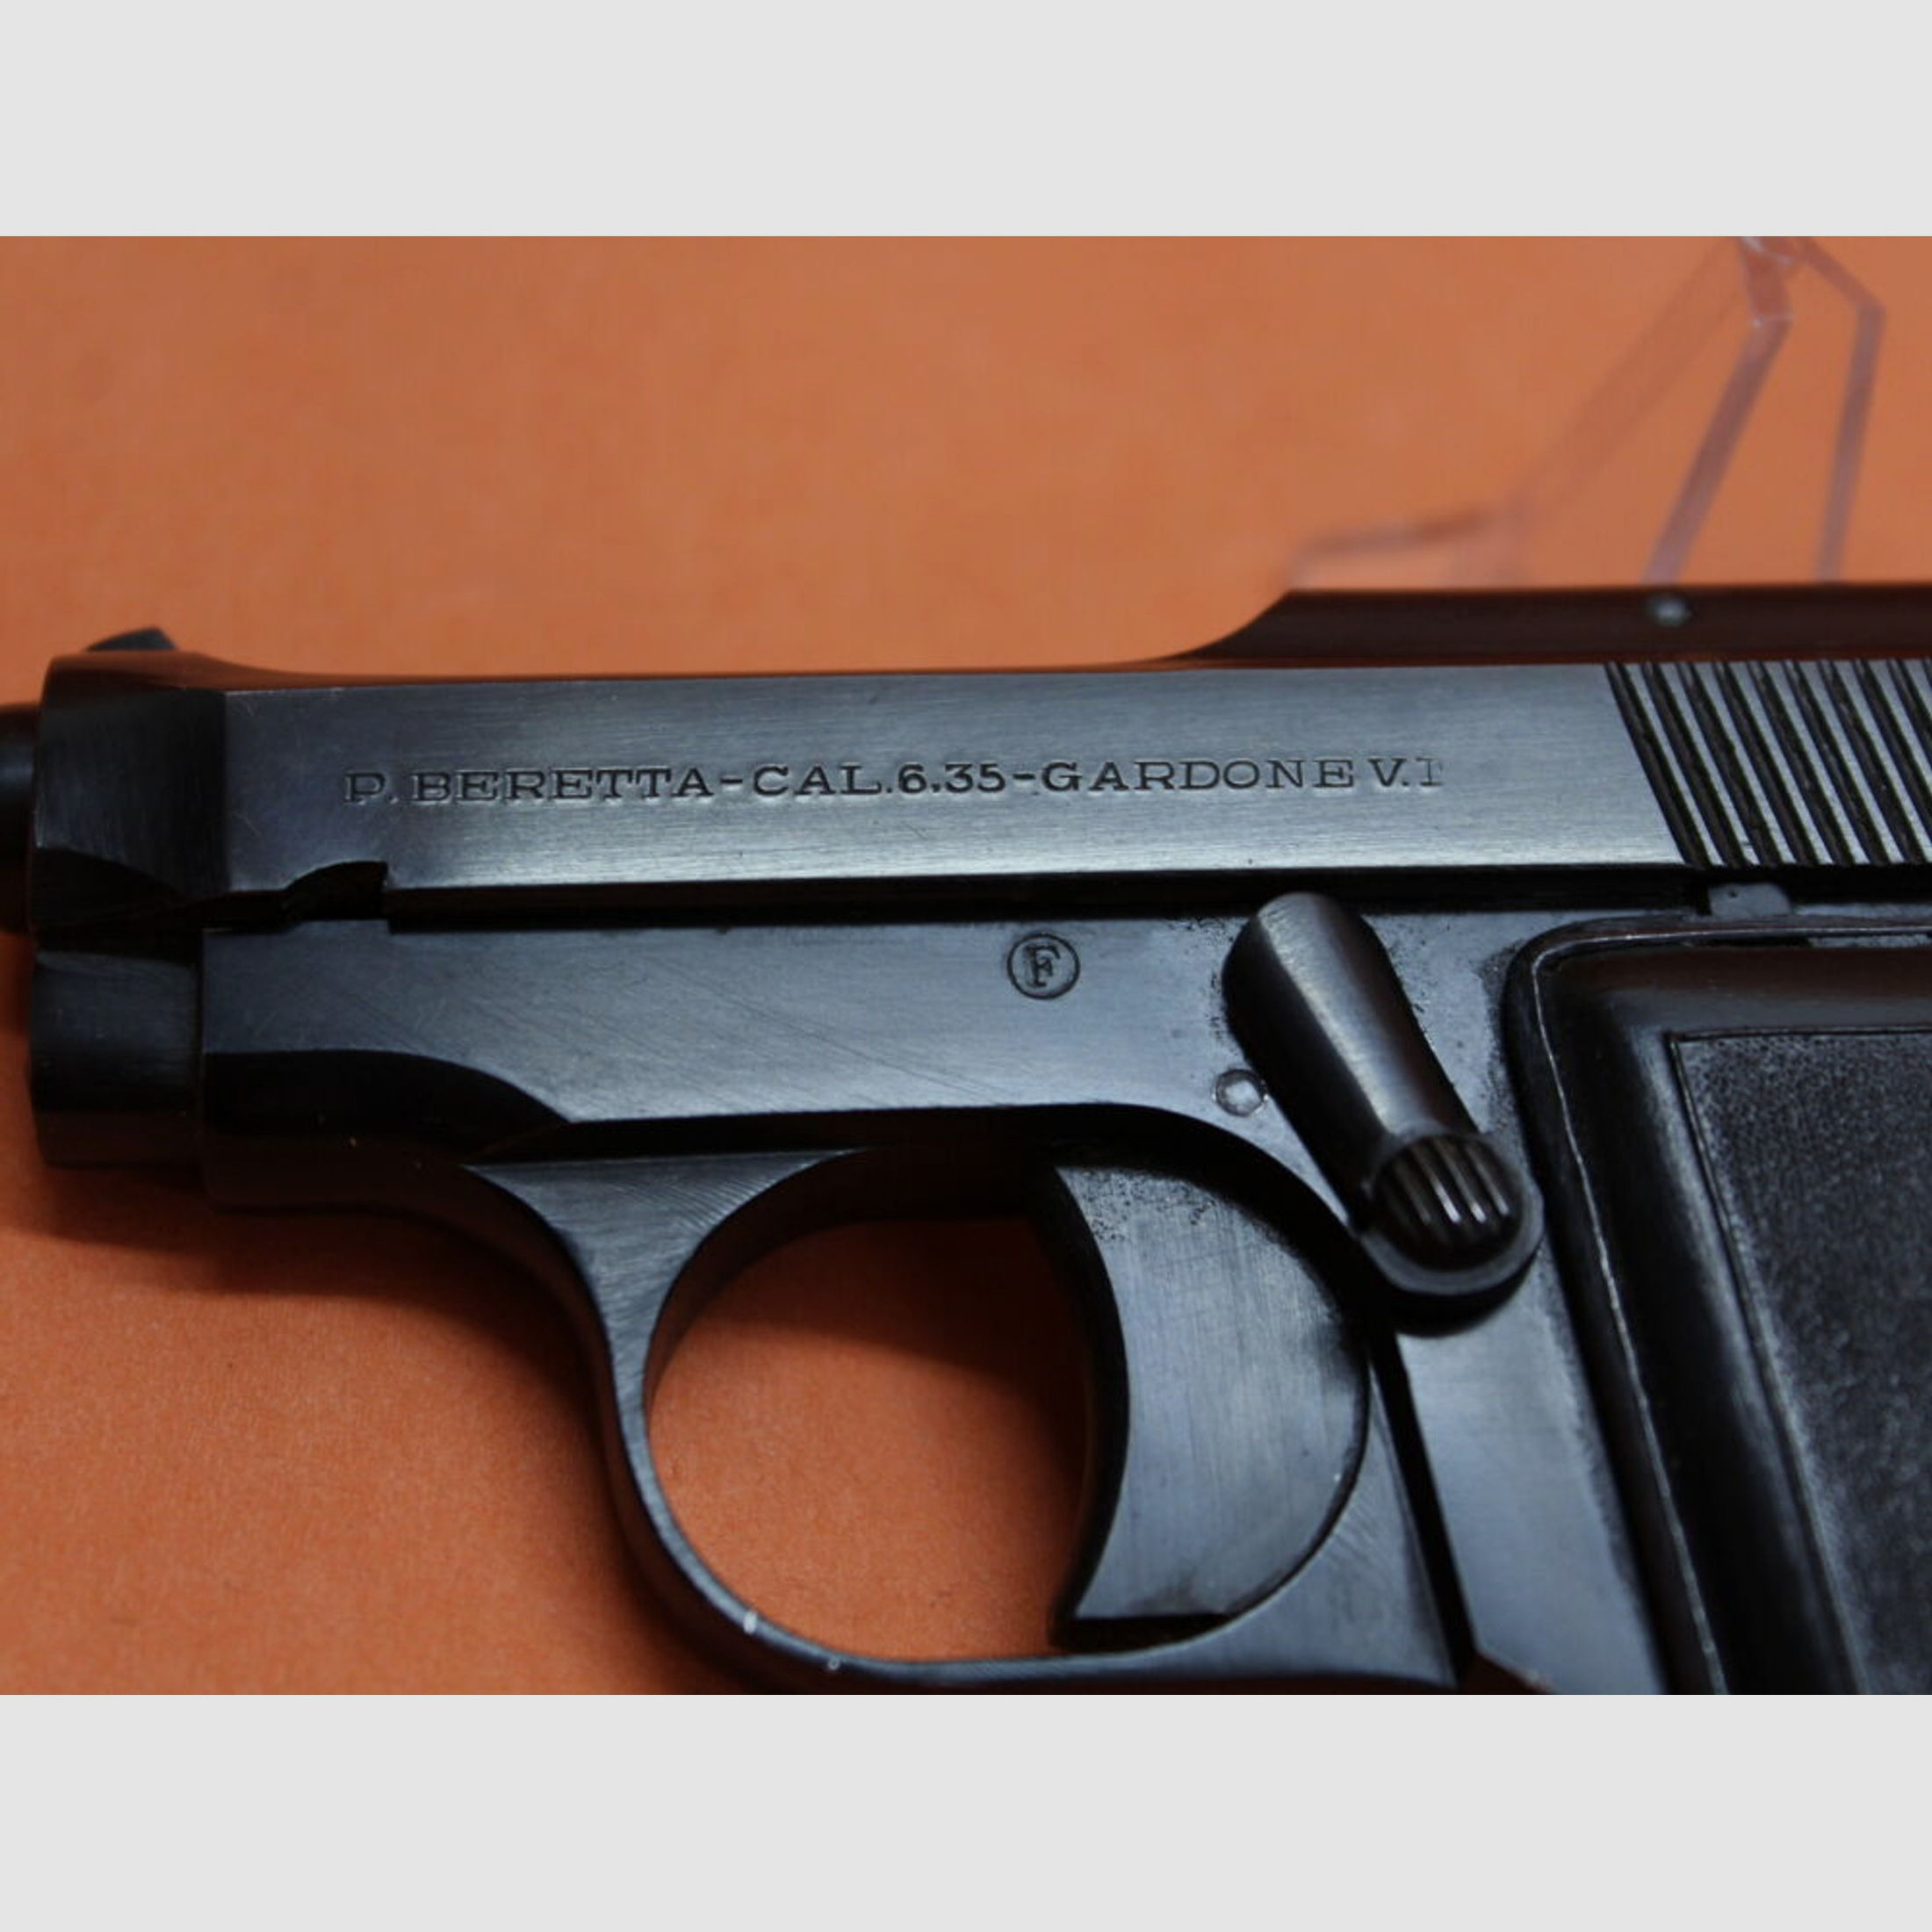 Beretta	 Ha.Pistole 6,35mmBrowning Beretta 418 "Bantam" wie James Bond Agent 007 bei Ian Flemings Romanen